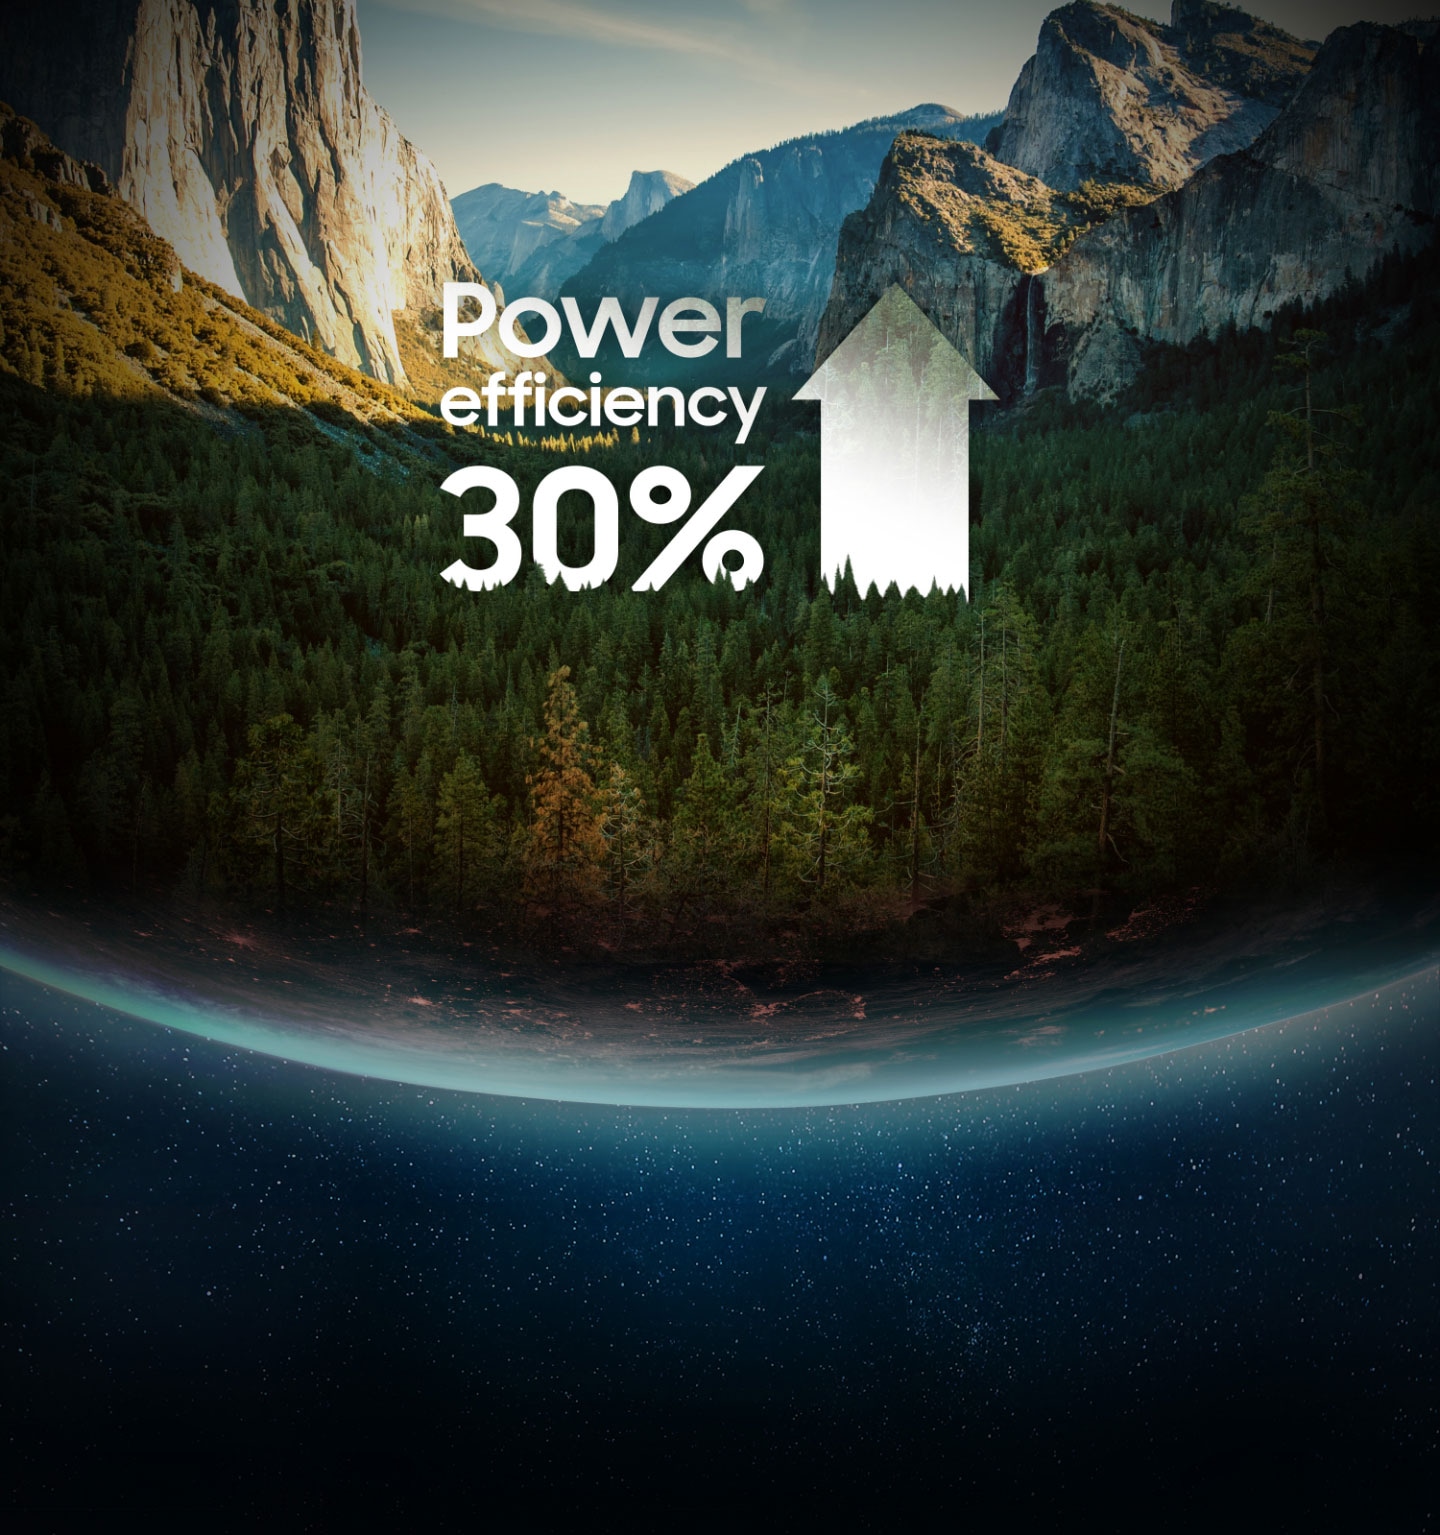 地球の木、山と「最大電力効率30%」という文章が一緒にあるイメージ